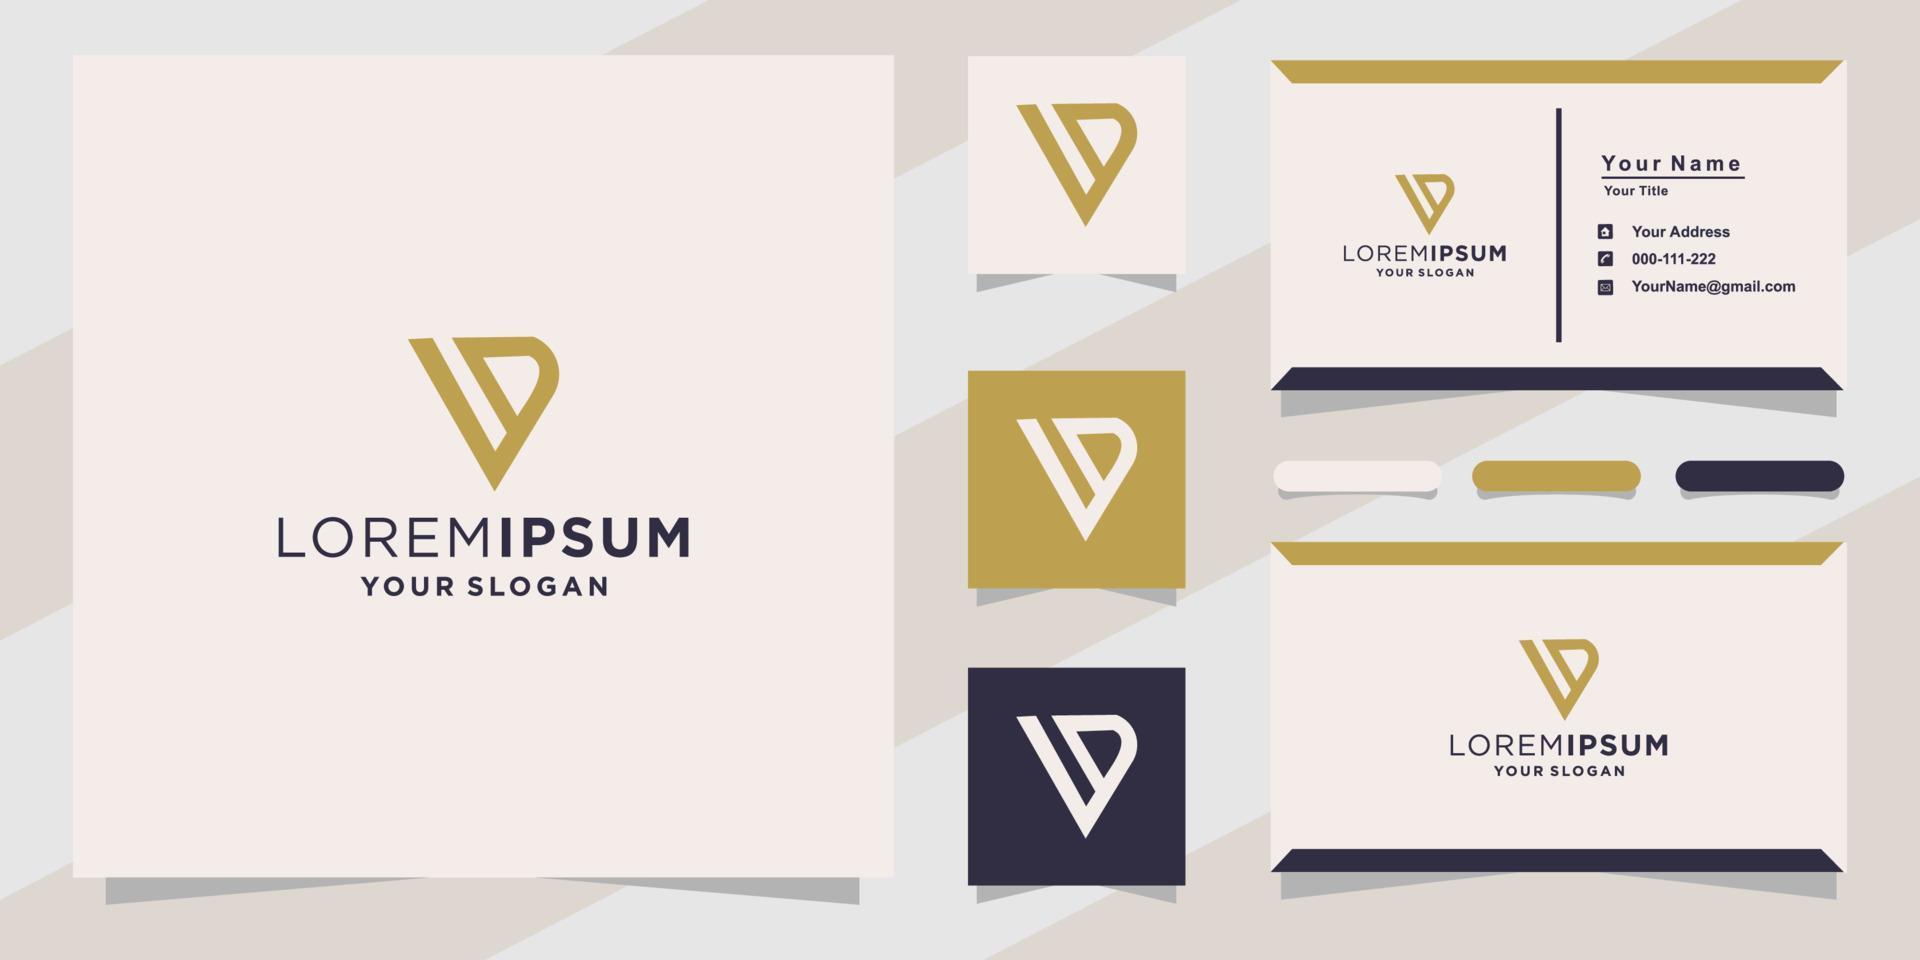 logotipo de letra vd para empresa con plantilla de tarjeta de visita vector